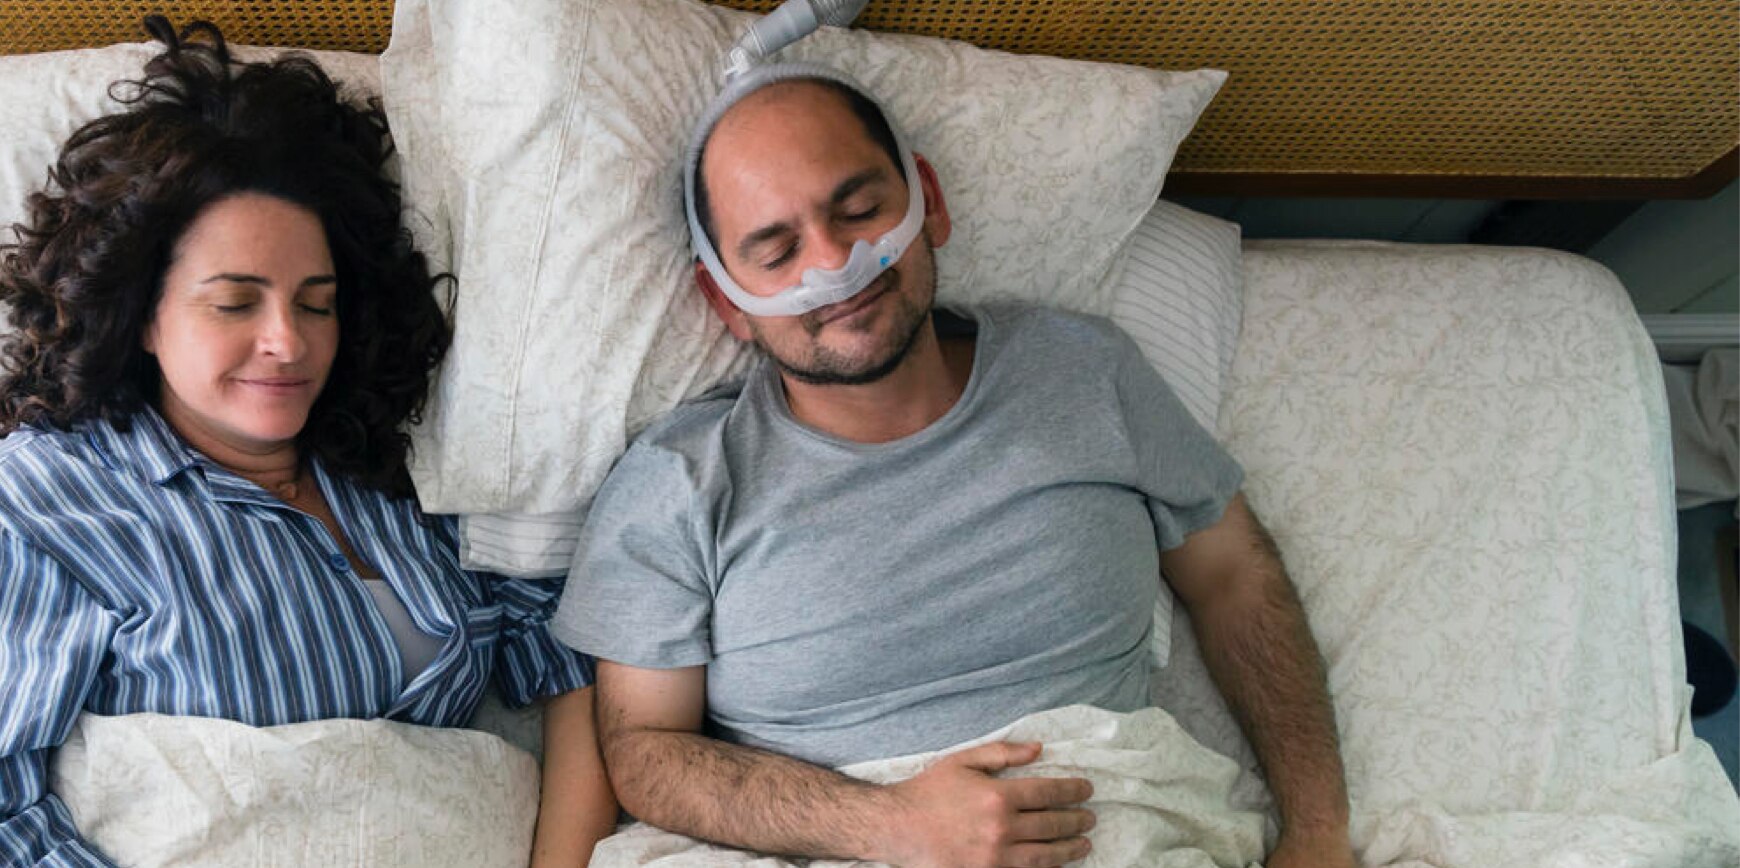 Una pareja durmiendo plácidamente en la cama, una de las personas está usando equipo médico para la apnea del sueño.